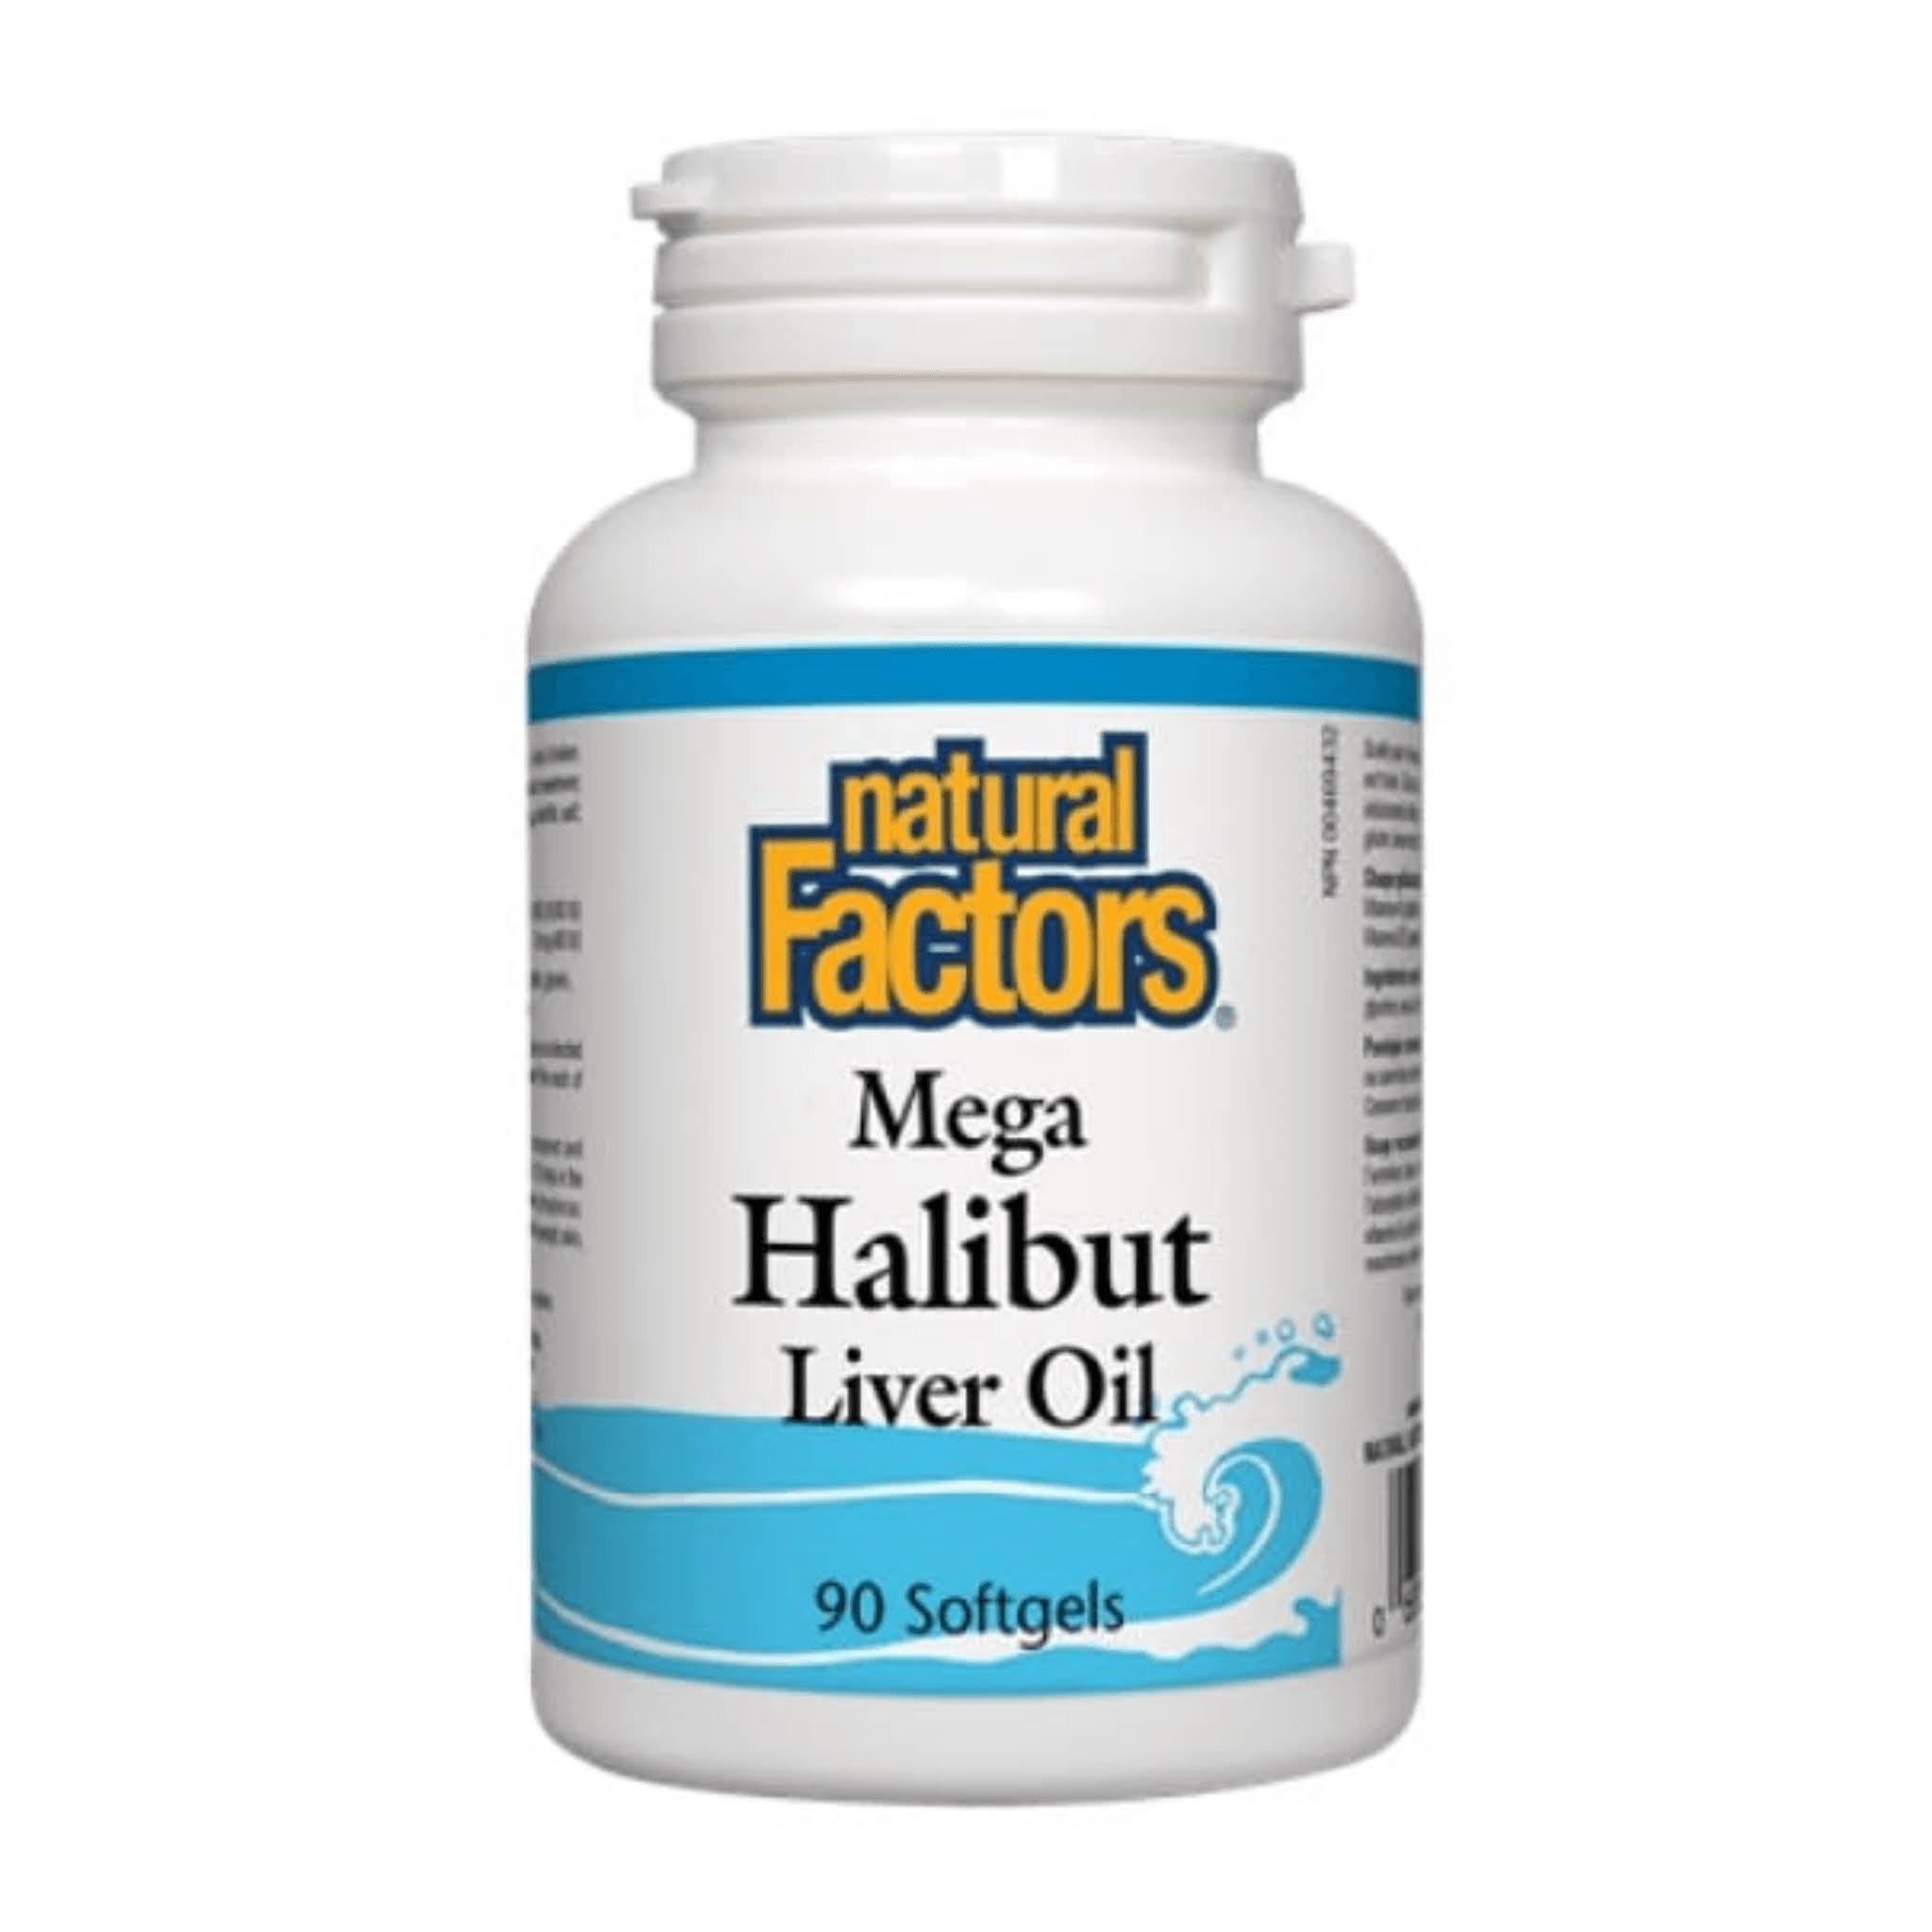 Natural Factors Mega Halibut Liver Oil Supplement - 90ct